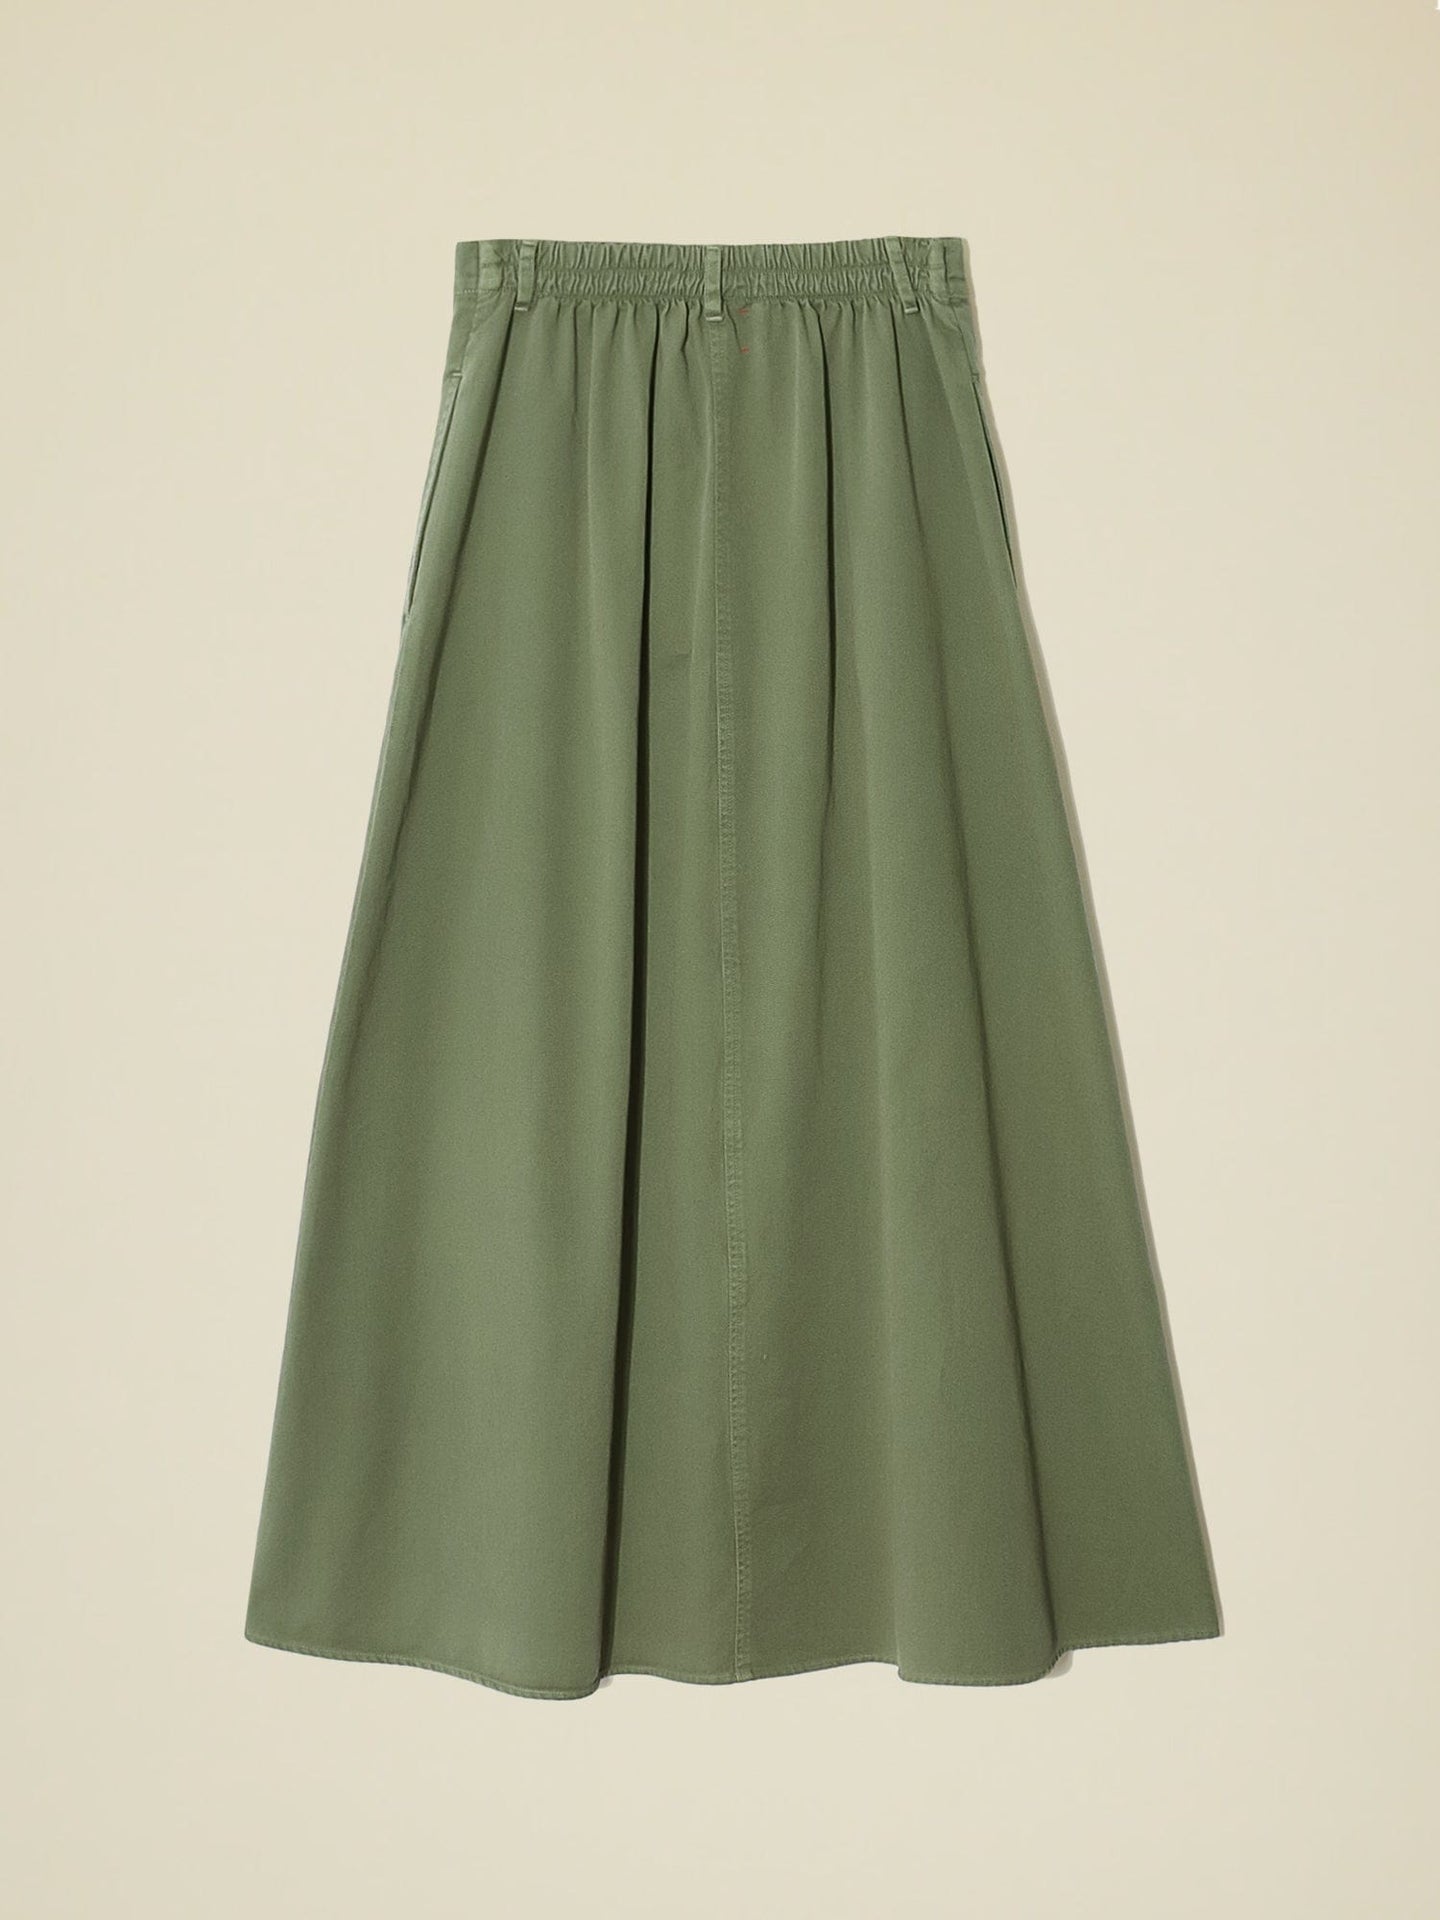 Xirena Skirt Vintage Pine Spence Skirt